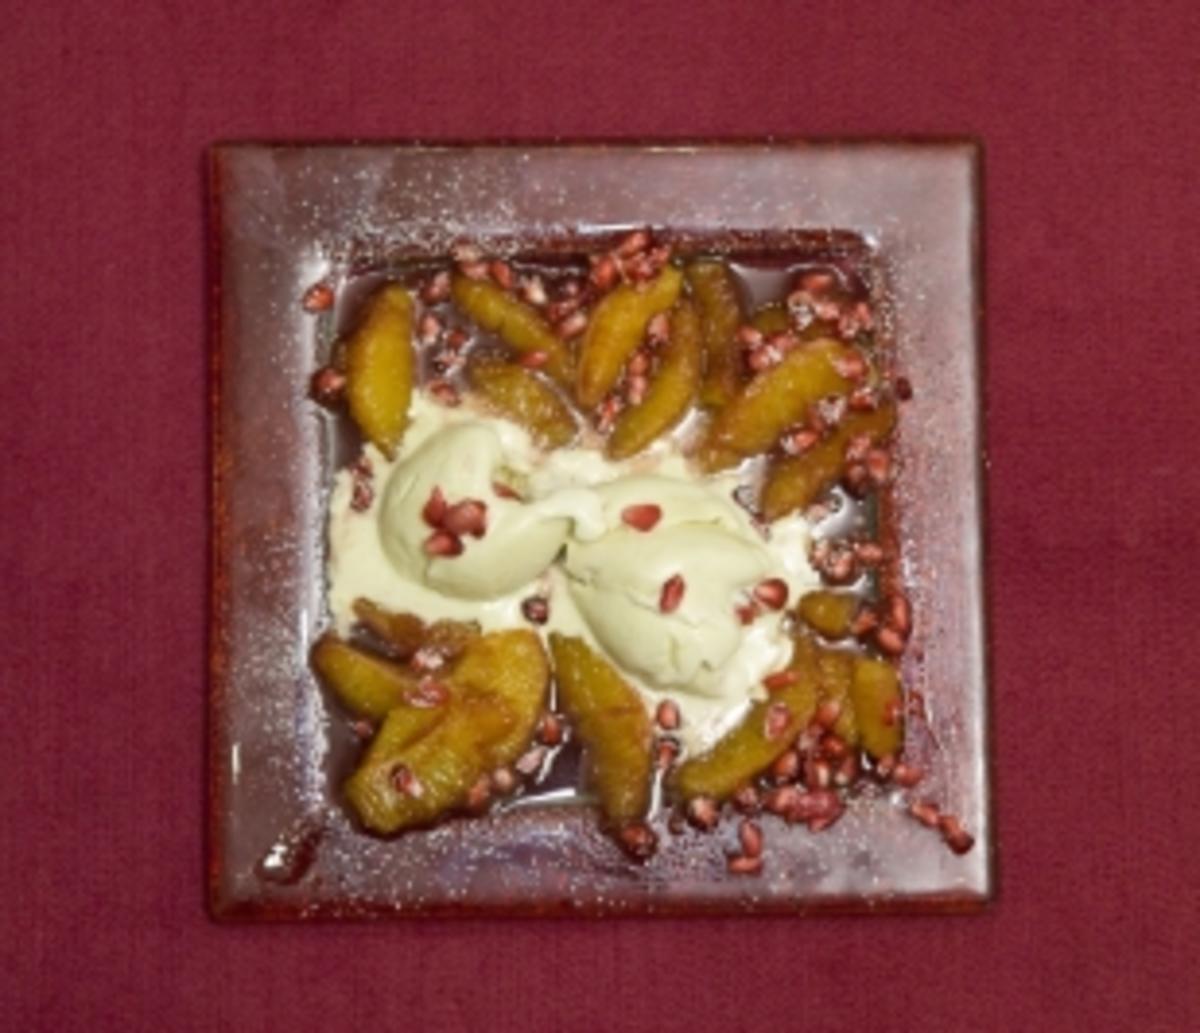 Fledermausgalle auf Transsilvanischem Filet mit süßen Blutstropfen (Eva
Jacob) - Rezept Gesendet von Das perfekte Promi Dinner